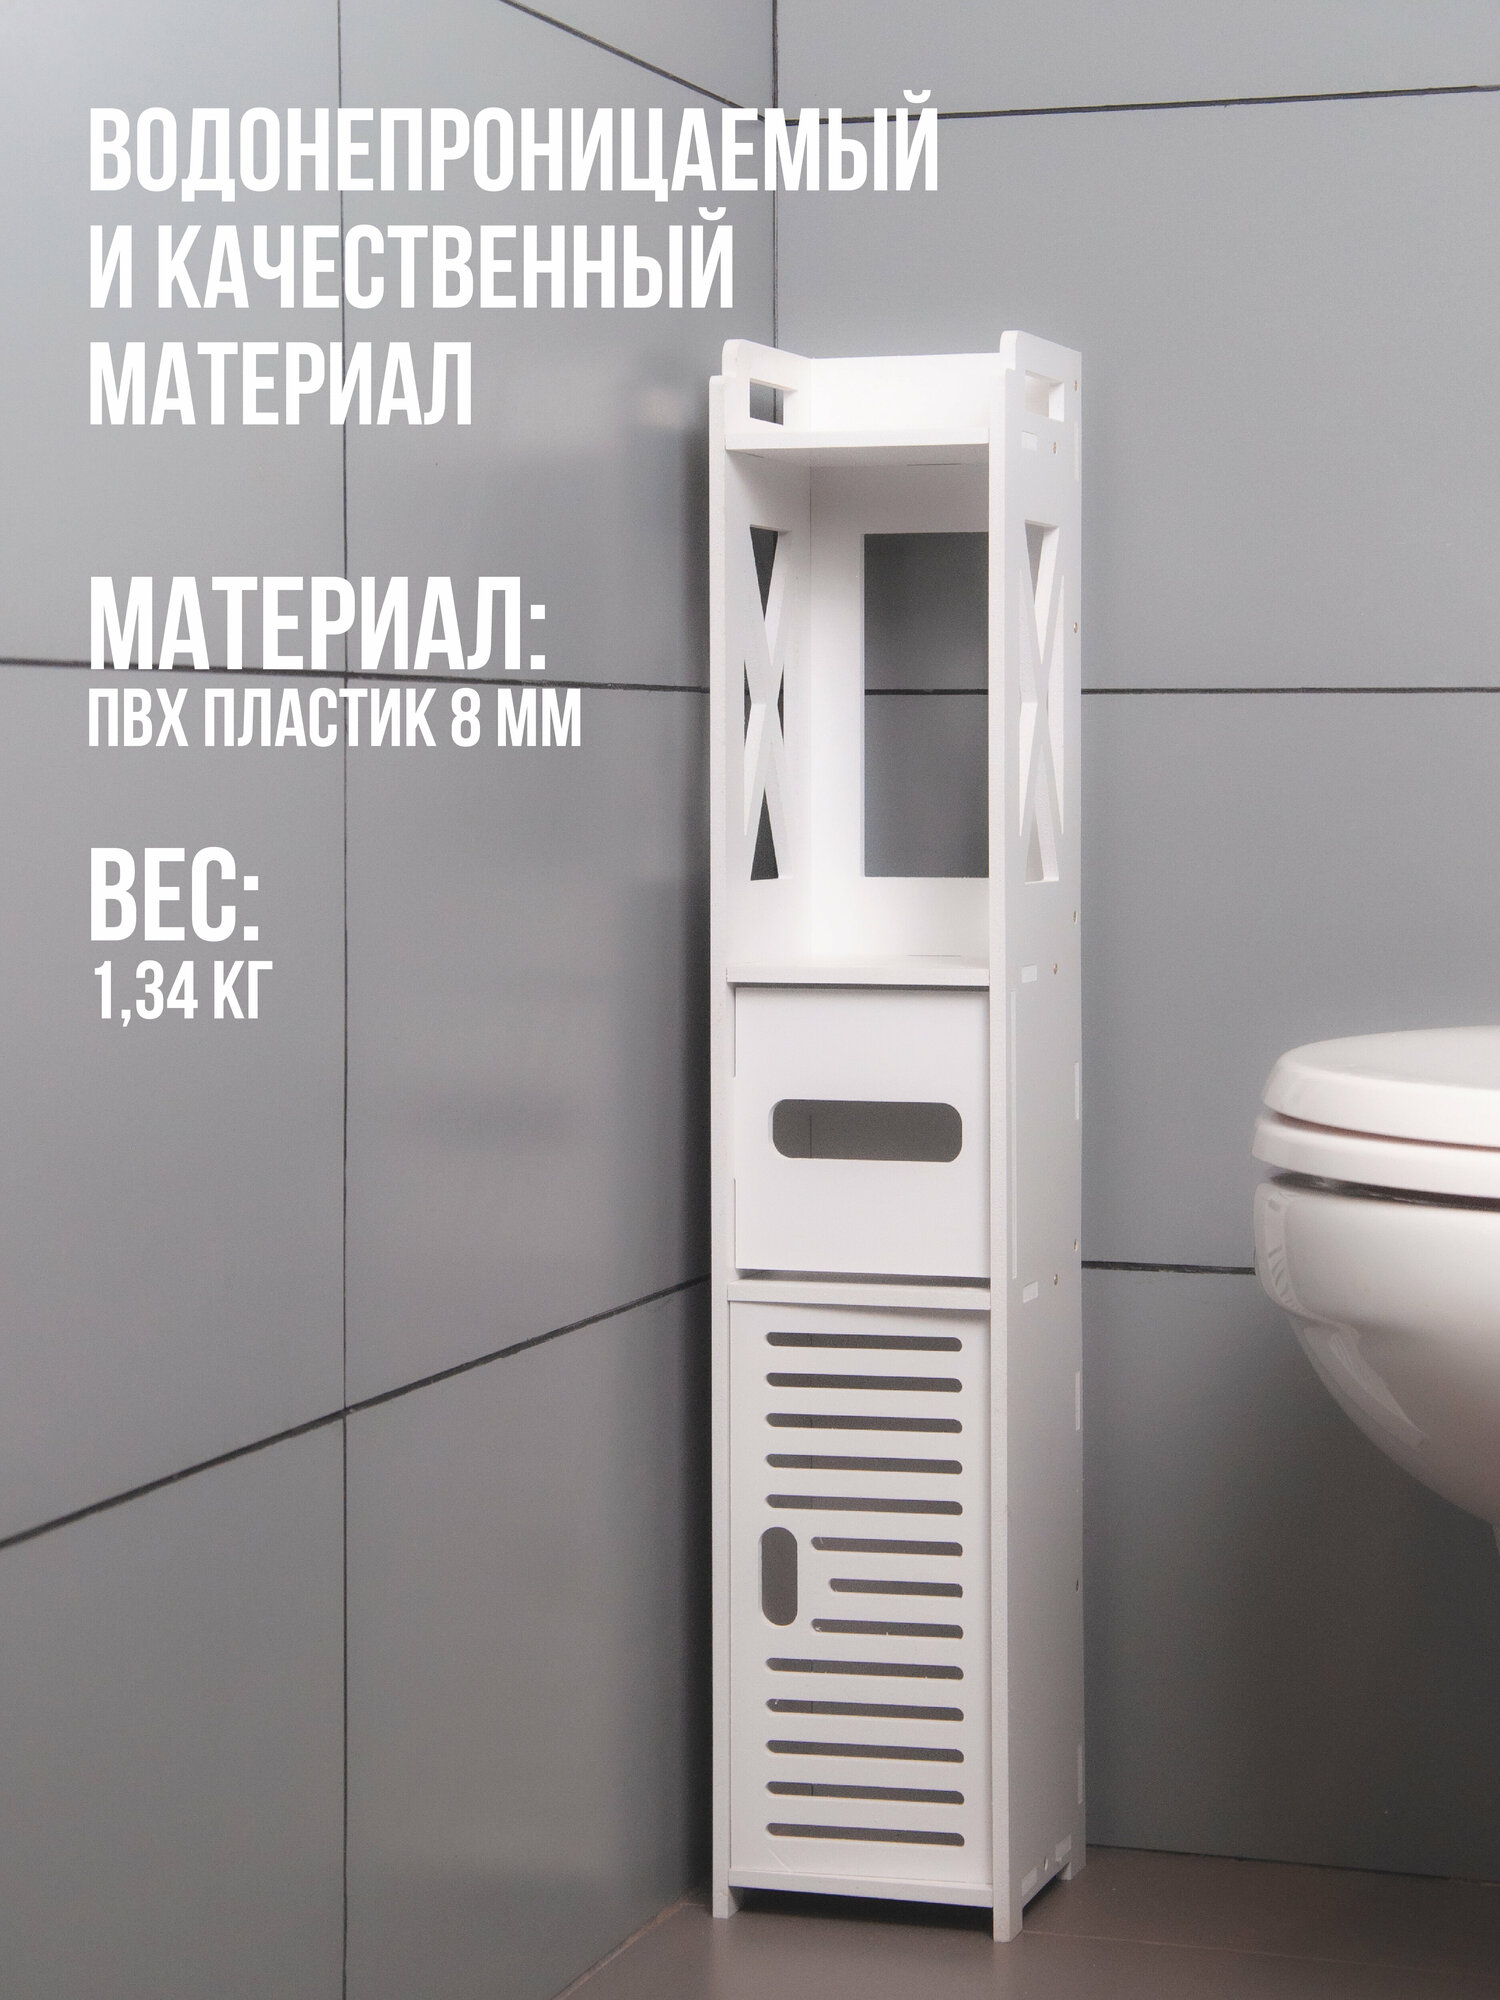 Шкаф-пенал для ванной и туалета белый напольный, узкая полка, держатель для туалетной бумаги